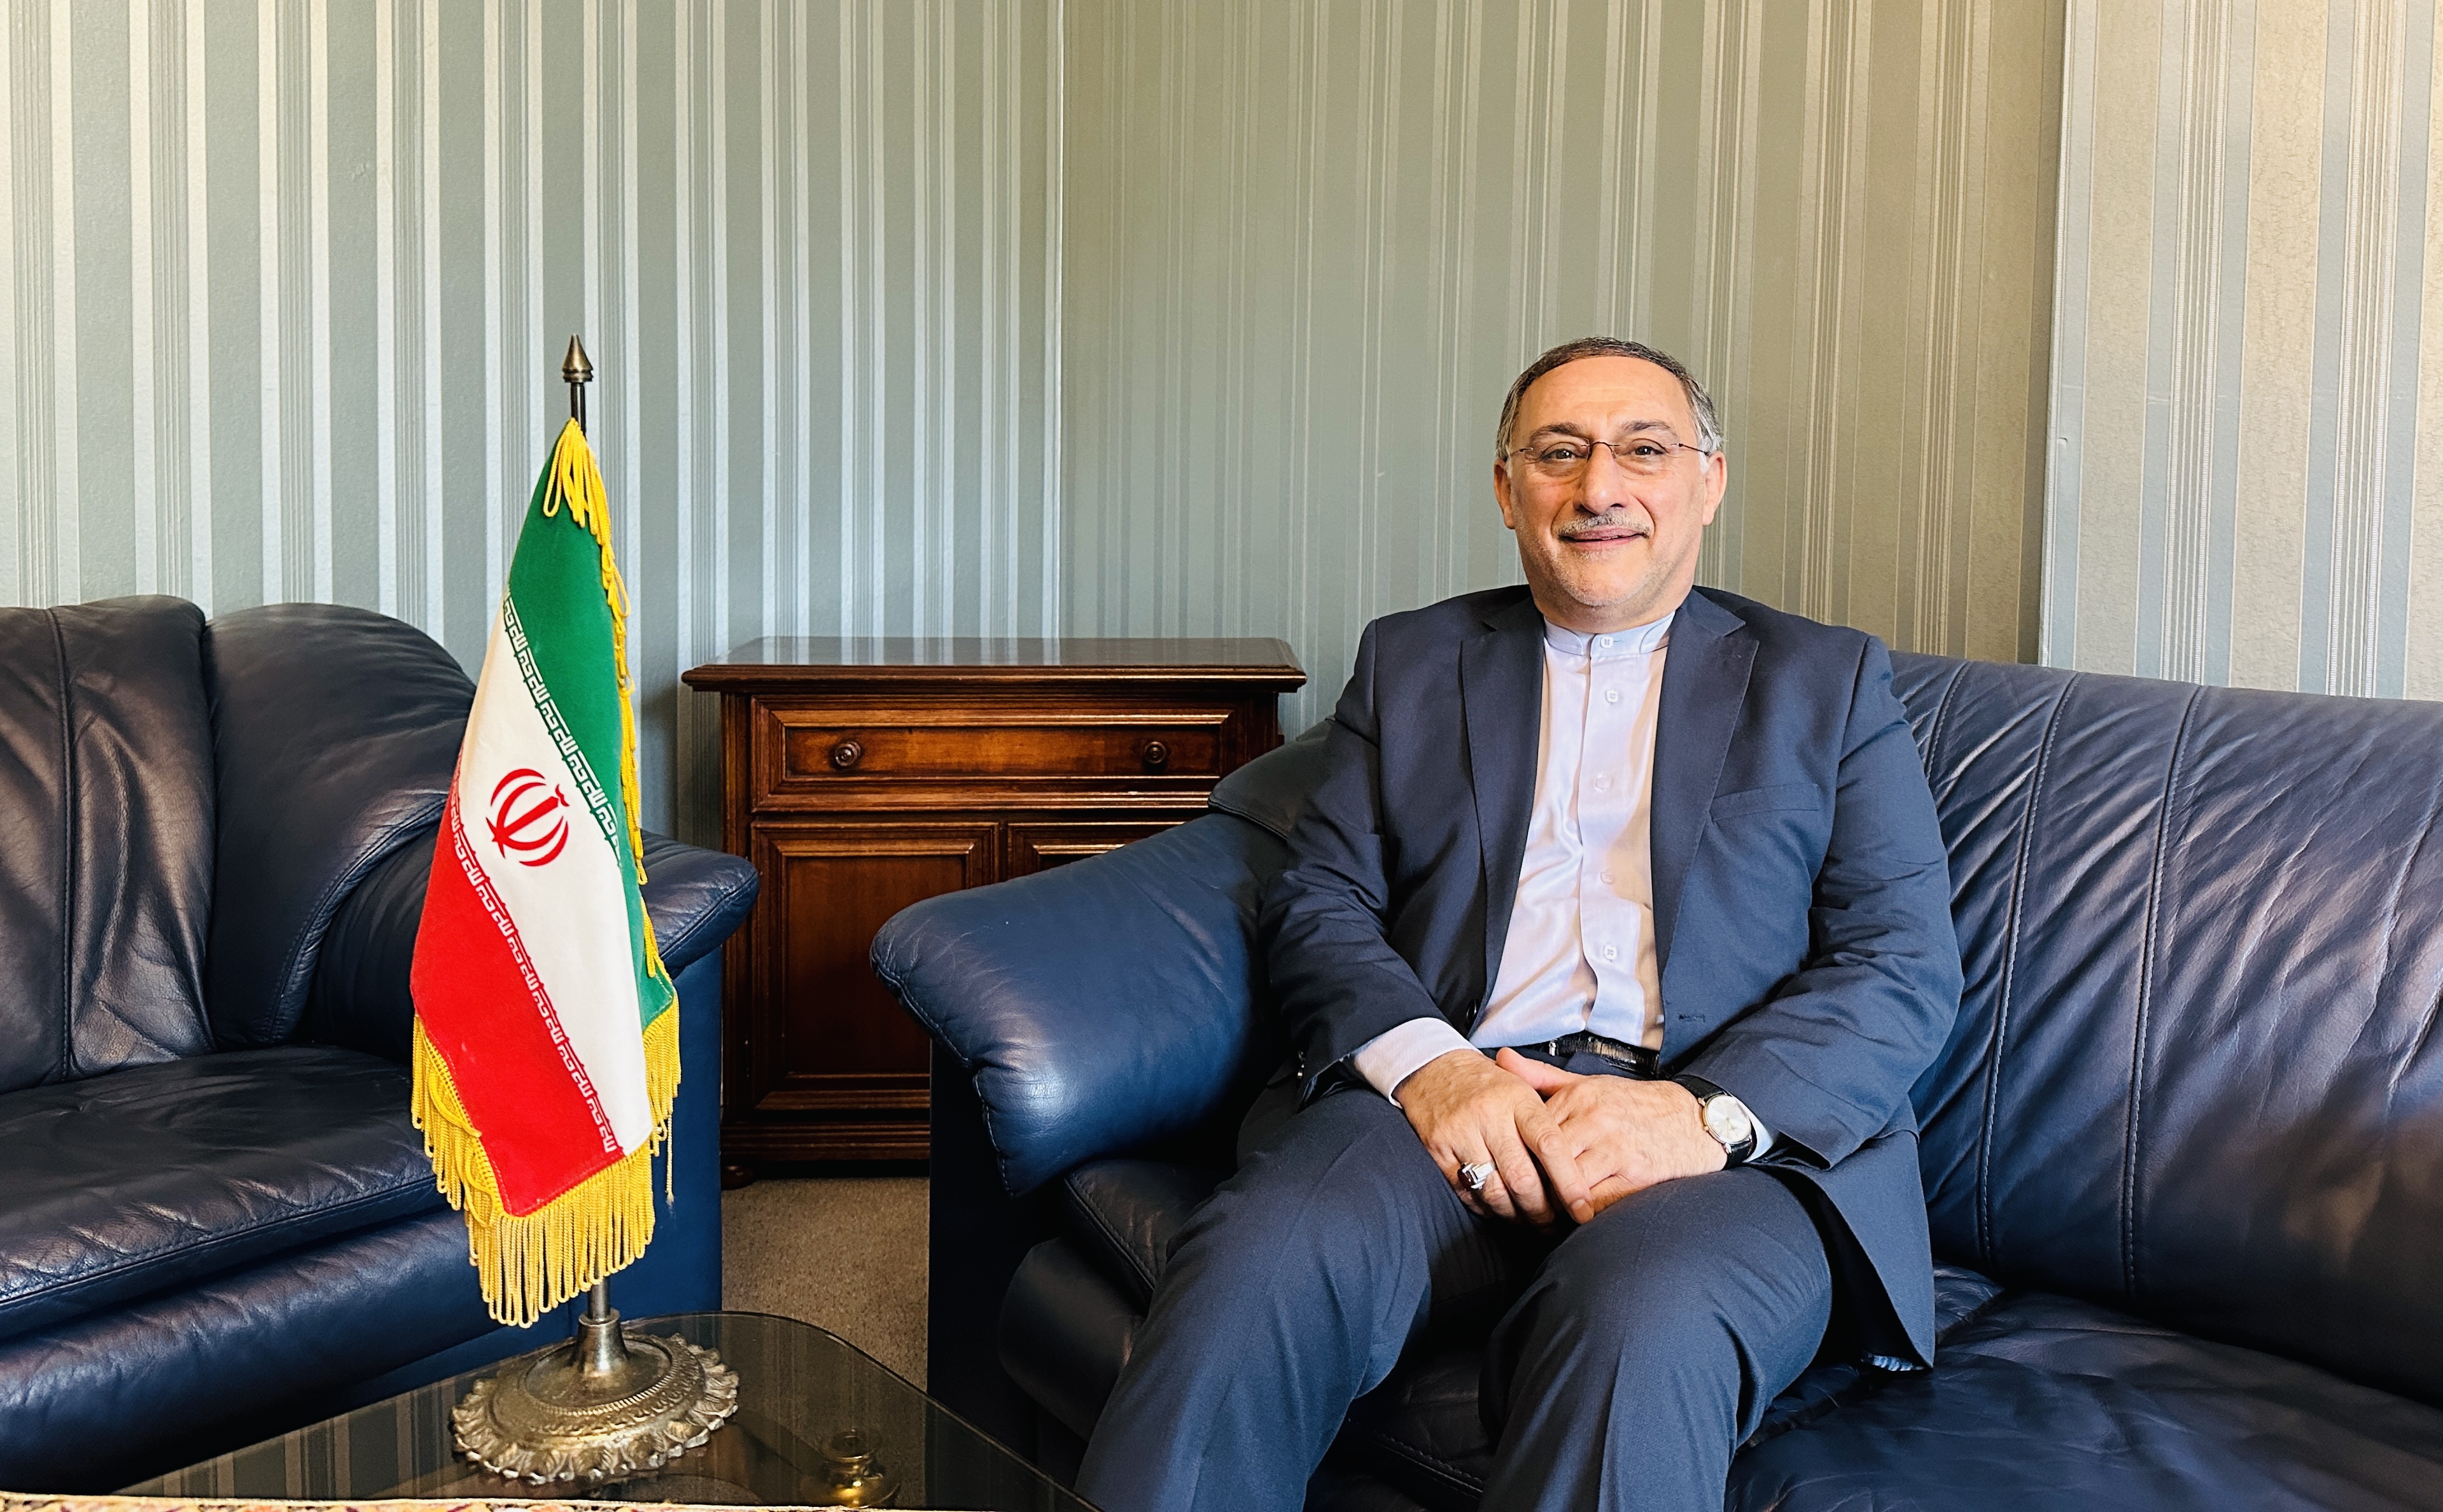 Mahmoud Barimani auf einem Sofa neben einer Iran-Flagge.